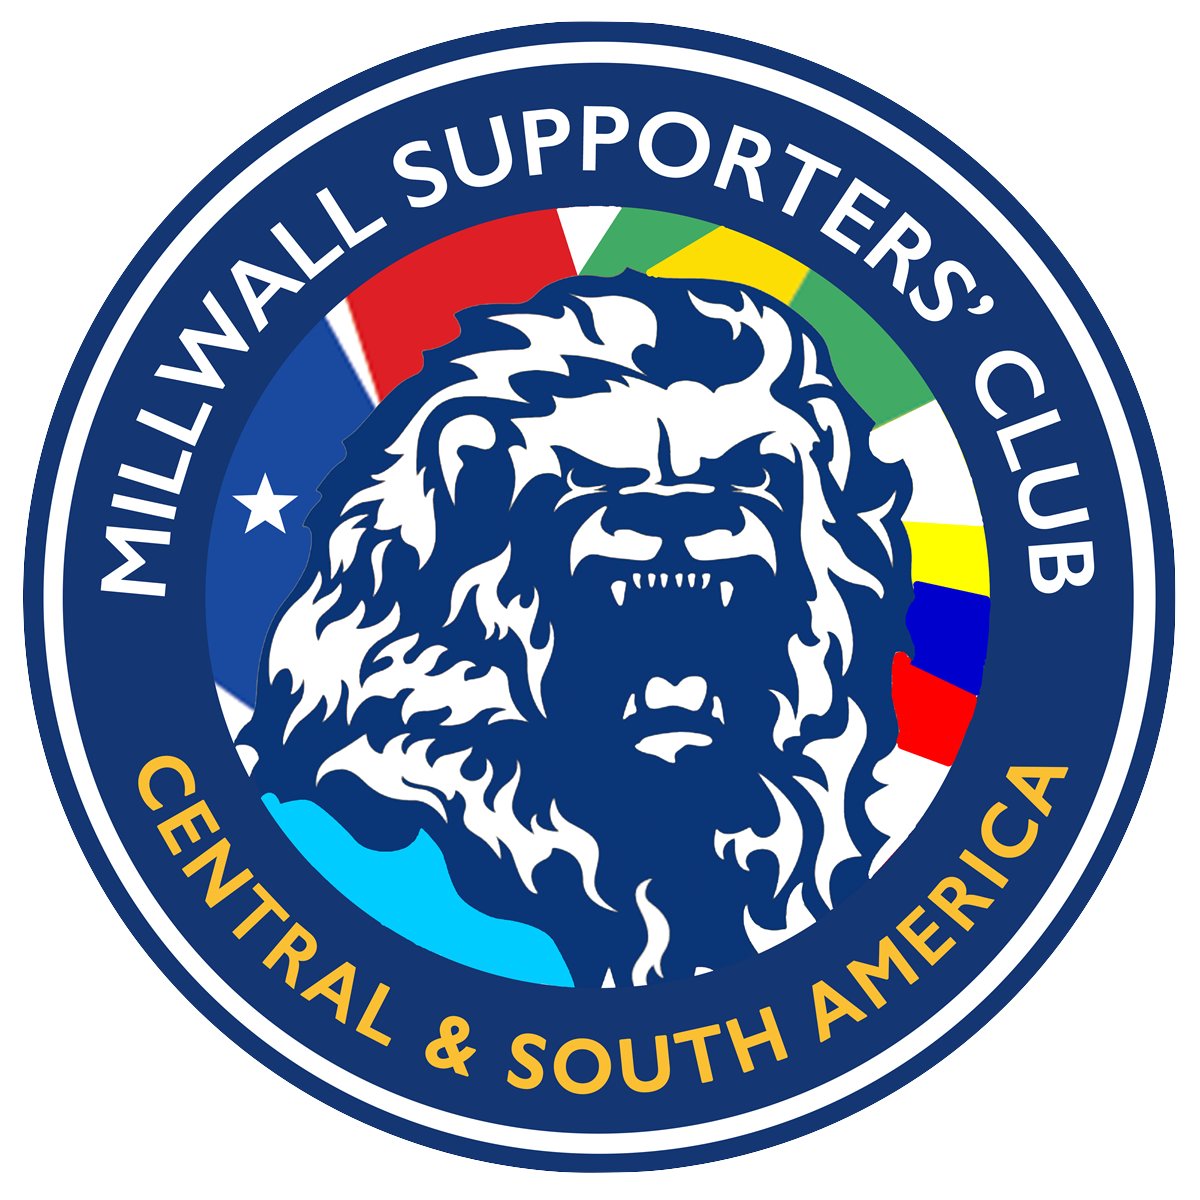 Somos el Club Oficial de Seguidores del Millwall en Latinoamérica | Somos una división de @TheMillwallFans #VamosMillwall #COYL